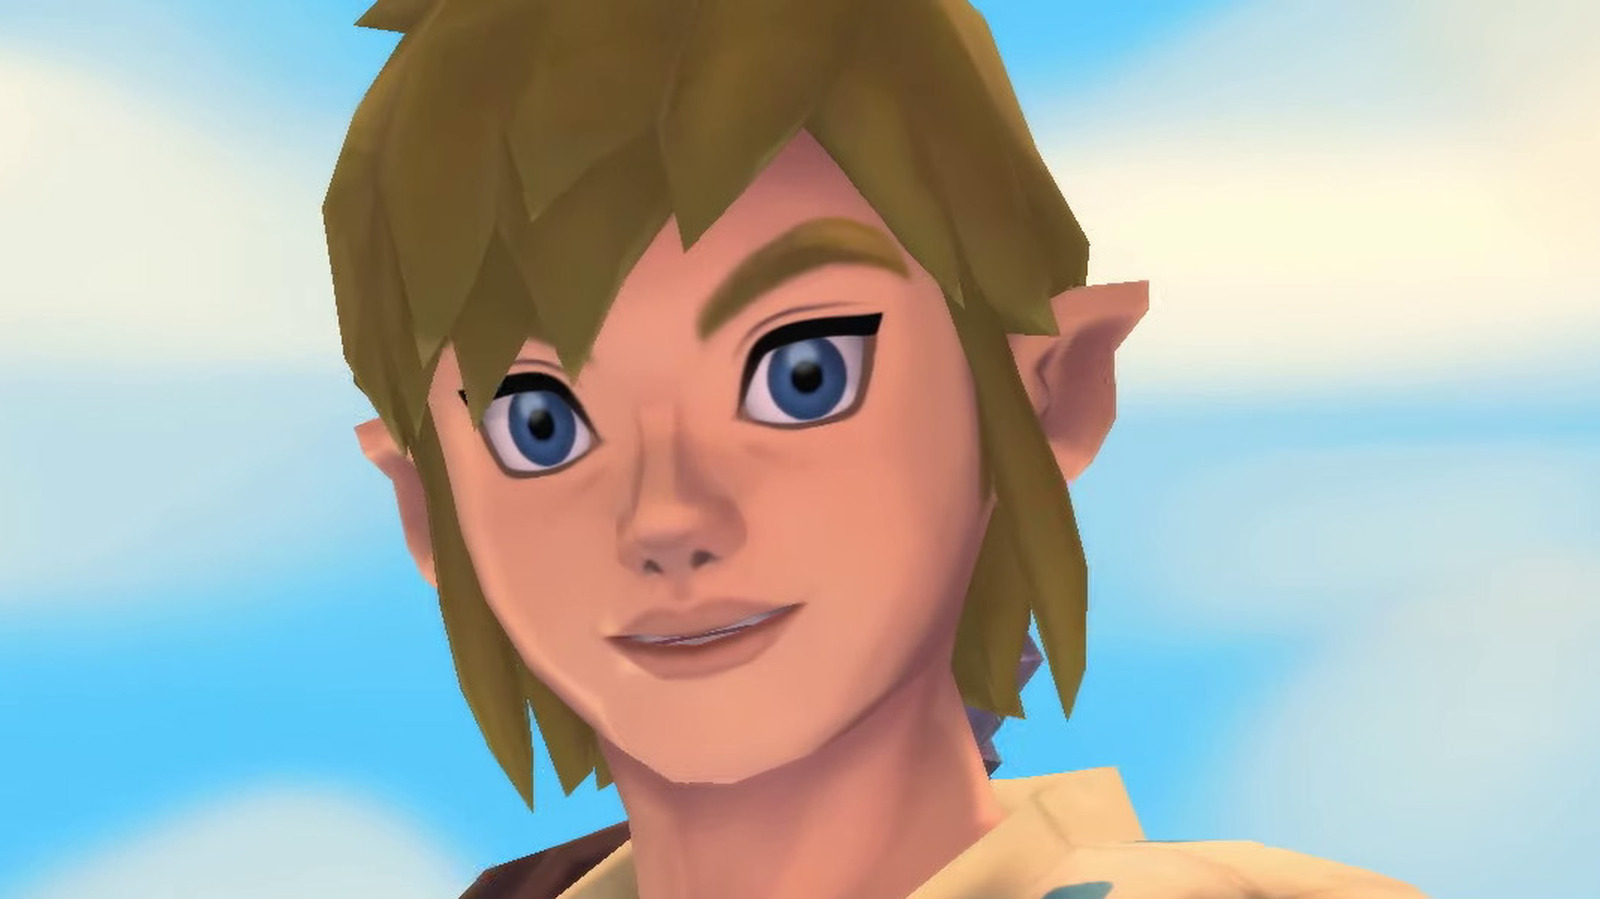 The Legend of Zelda: Skyward Sword Fans Discover Popular Meme